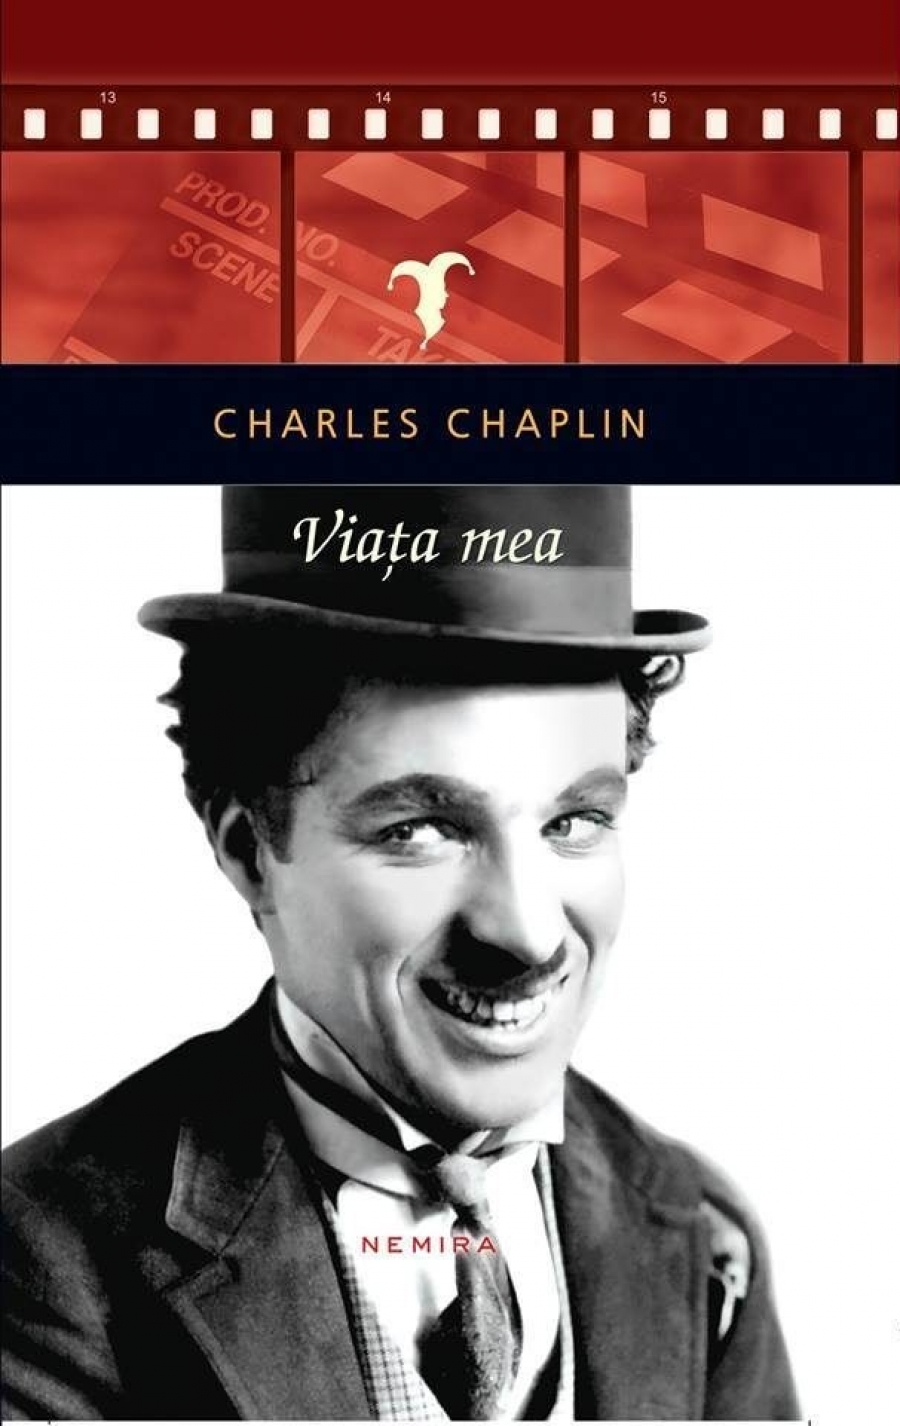 UȘOR DE CITIT. ”Viaţa mea”, fermecătoarea autobiografie a lui Chaplin